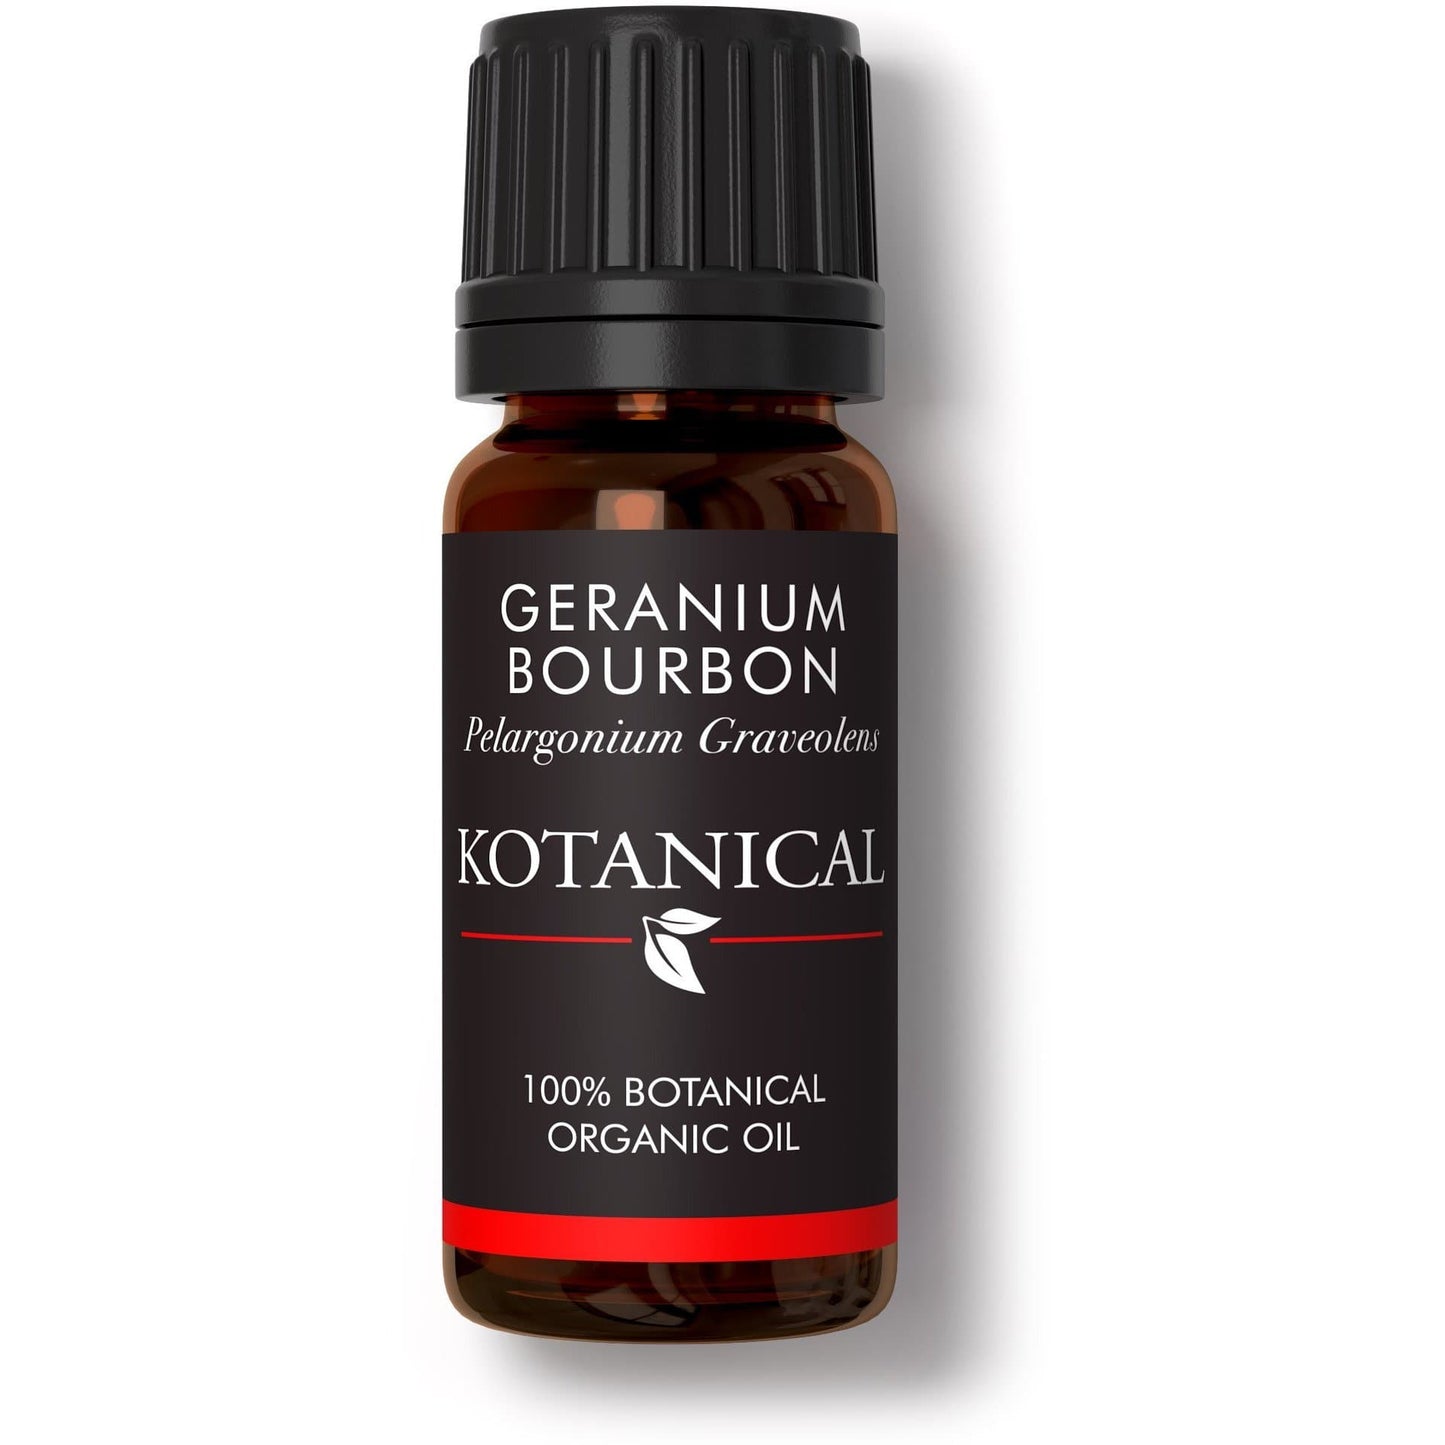 Geranium Bourbon Essential Oil essential oil kotanical 